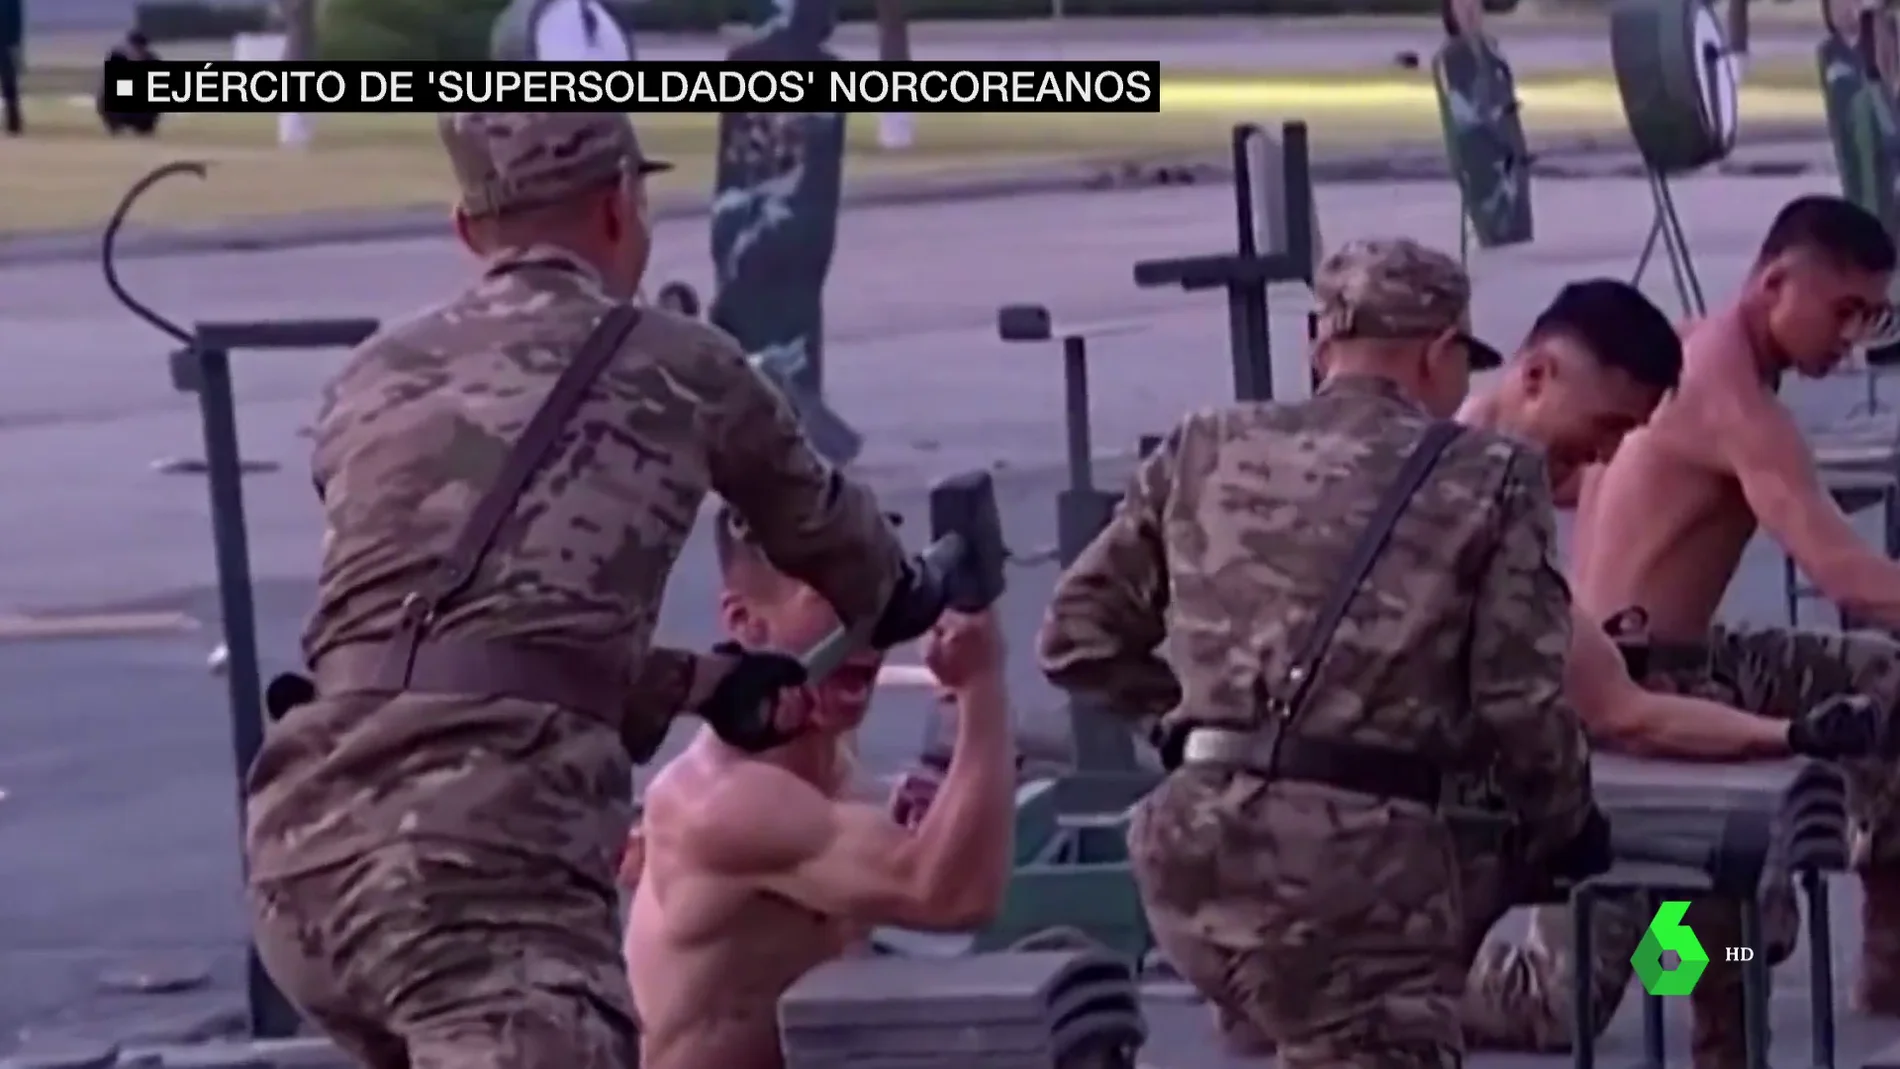 Las demostraciones de fuerza sobrehumana del ejército de 'supersoldados' de Kim Jong Un